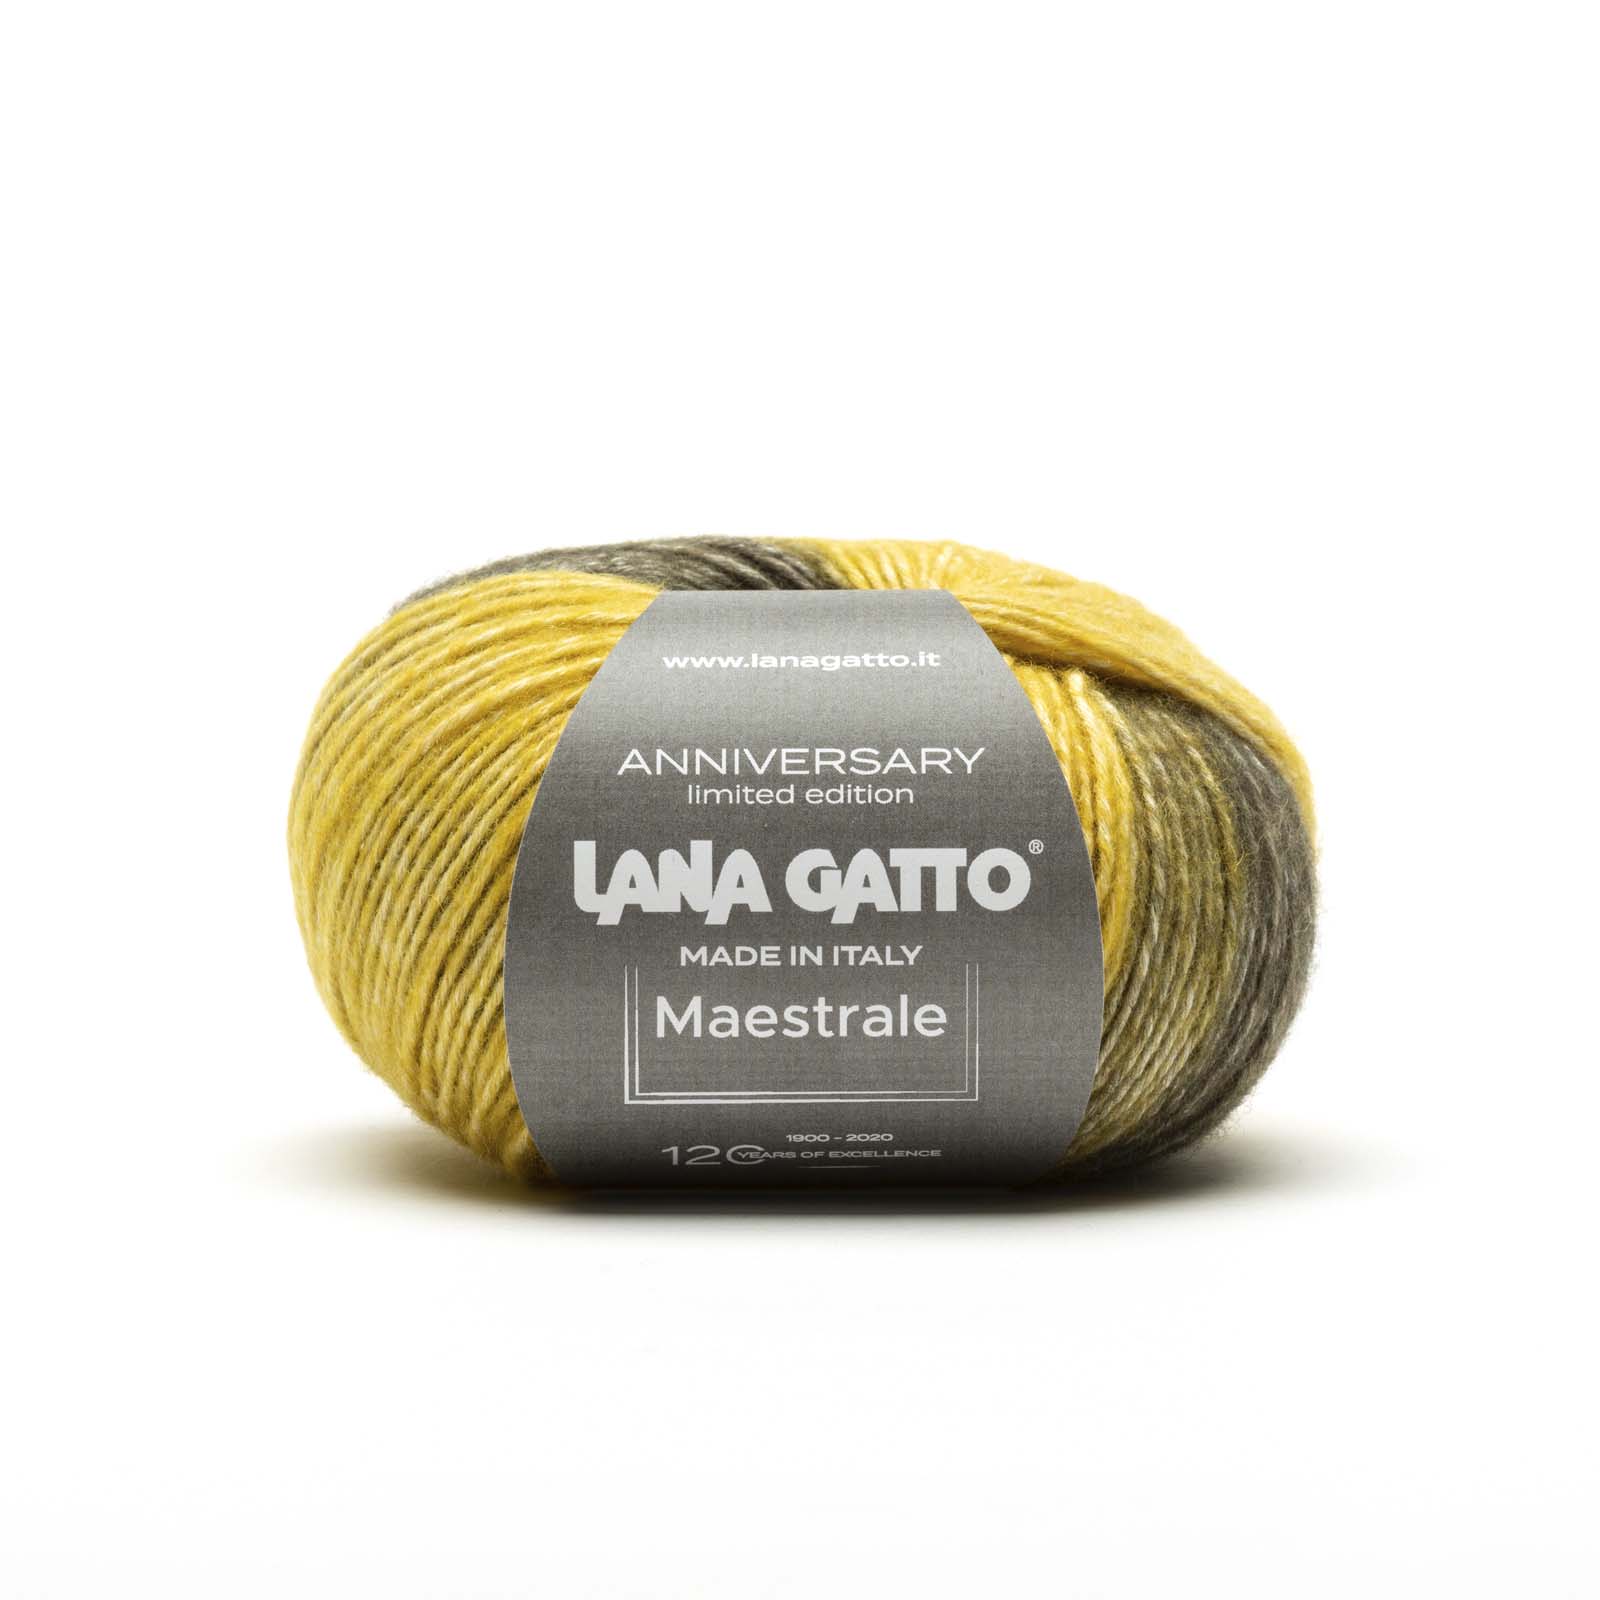 gomitolo di lana-cotone “Maestrale” ANNIVERSARY Limited Edition, Lana Gatto